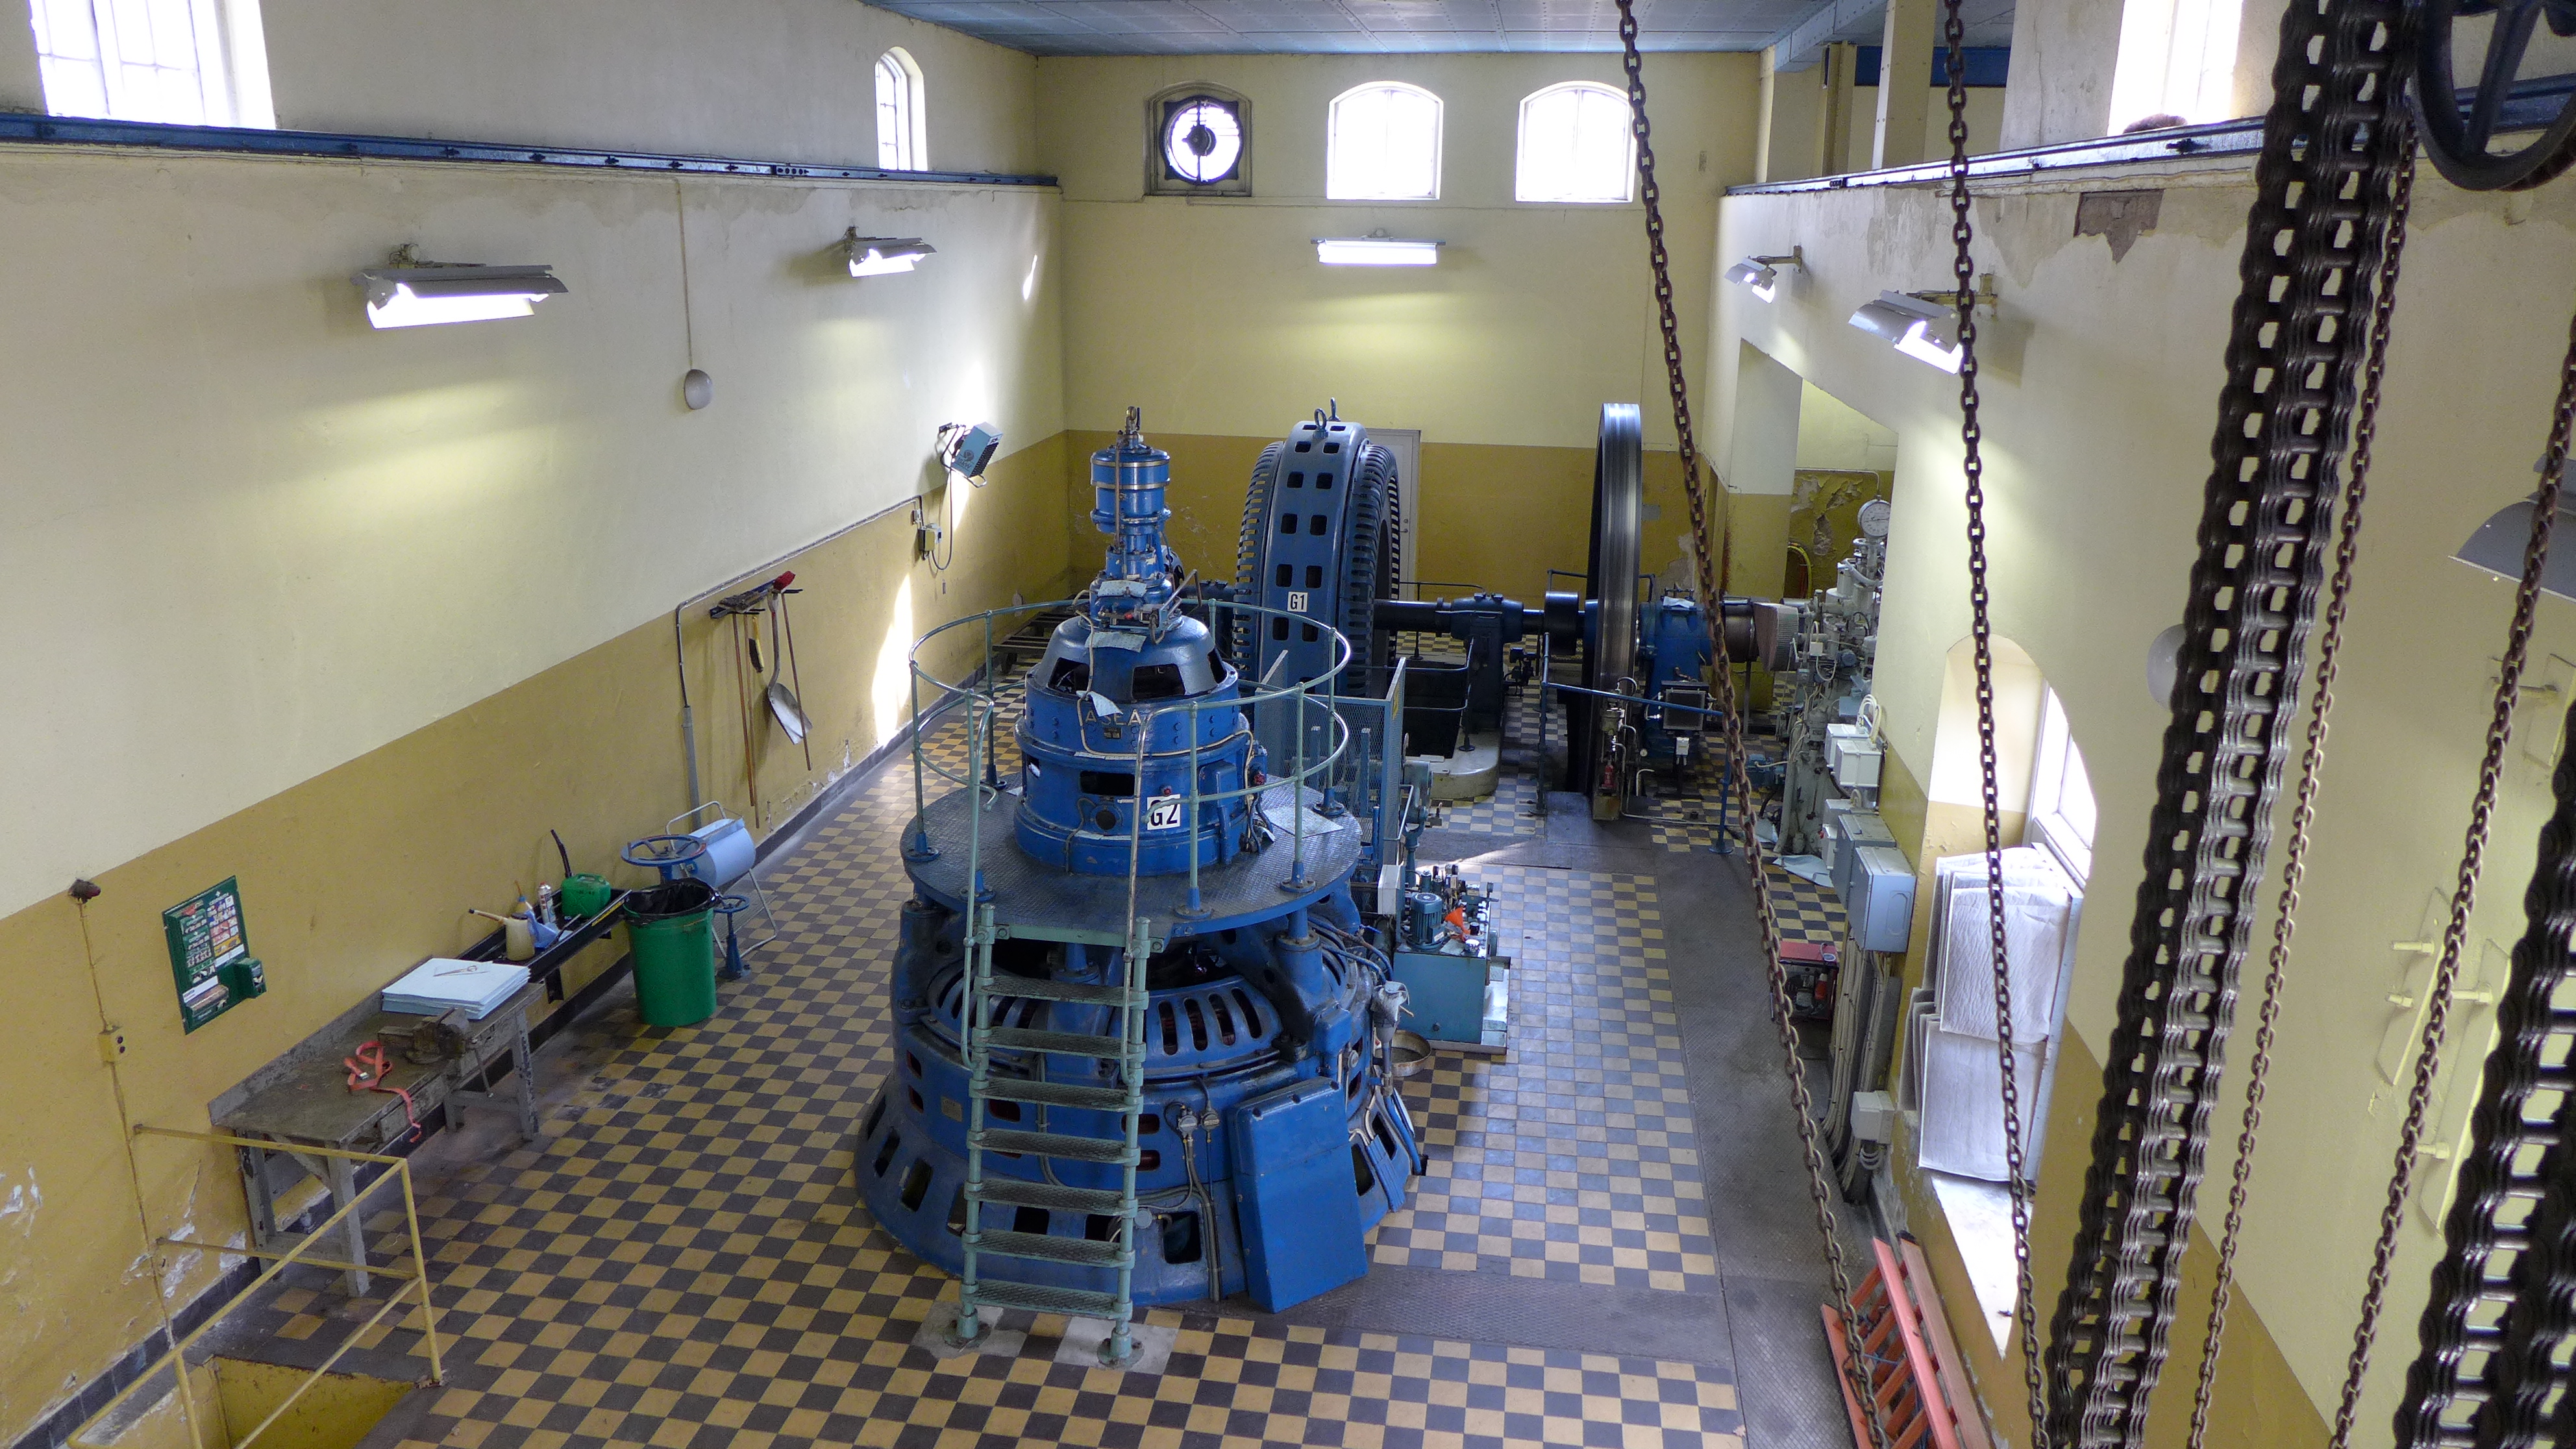 Aggregat 2 är en kaplanturbin i tryckskåp av plåt, tillverkad 1940 av Finshyttan. Turbinen regleras med fallviktsstängare och hydrauliskt pådrag. Generatorn är en synkron Asea med tillhörande matare i drift.